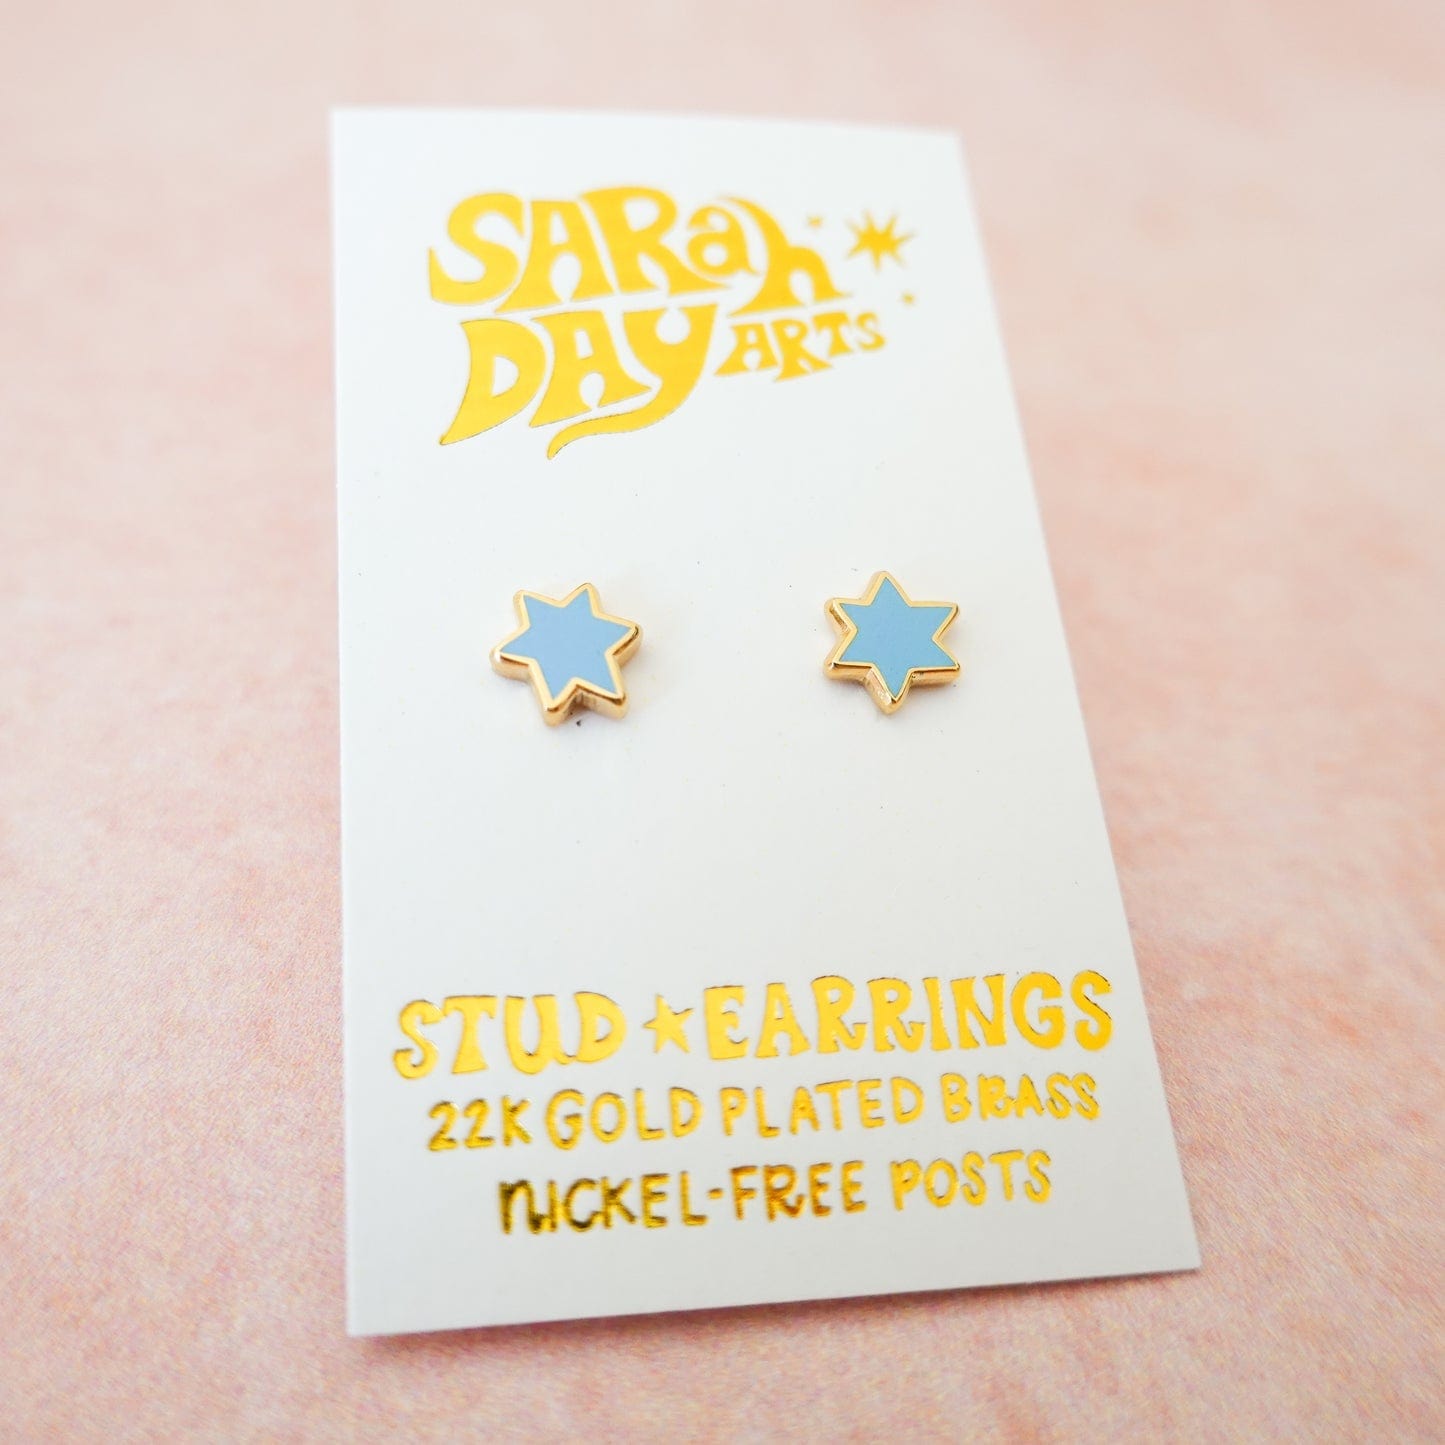 Sarah Day Arts Earrings Mini Magen David Stud Earrings - Sky Blue